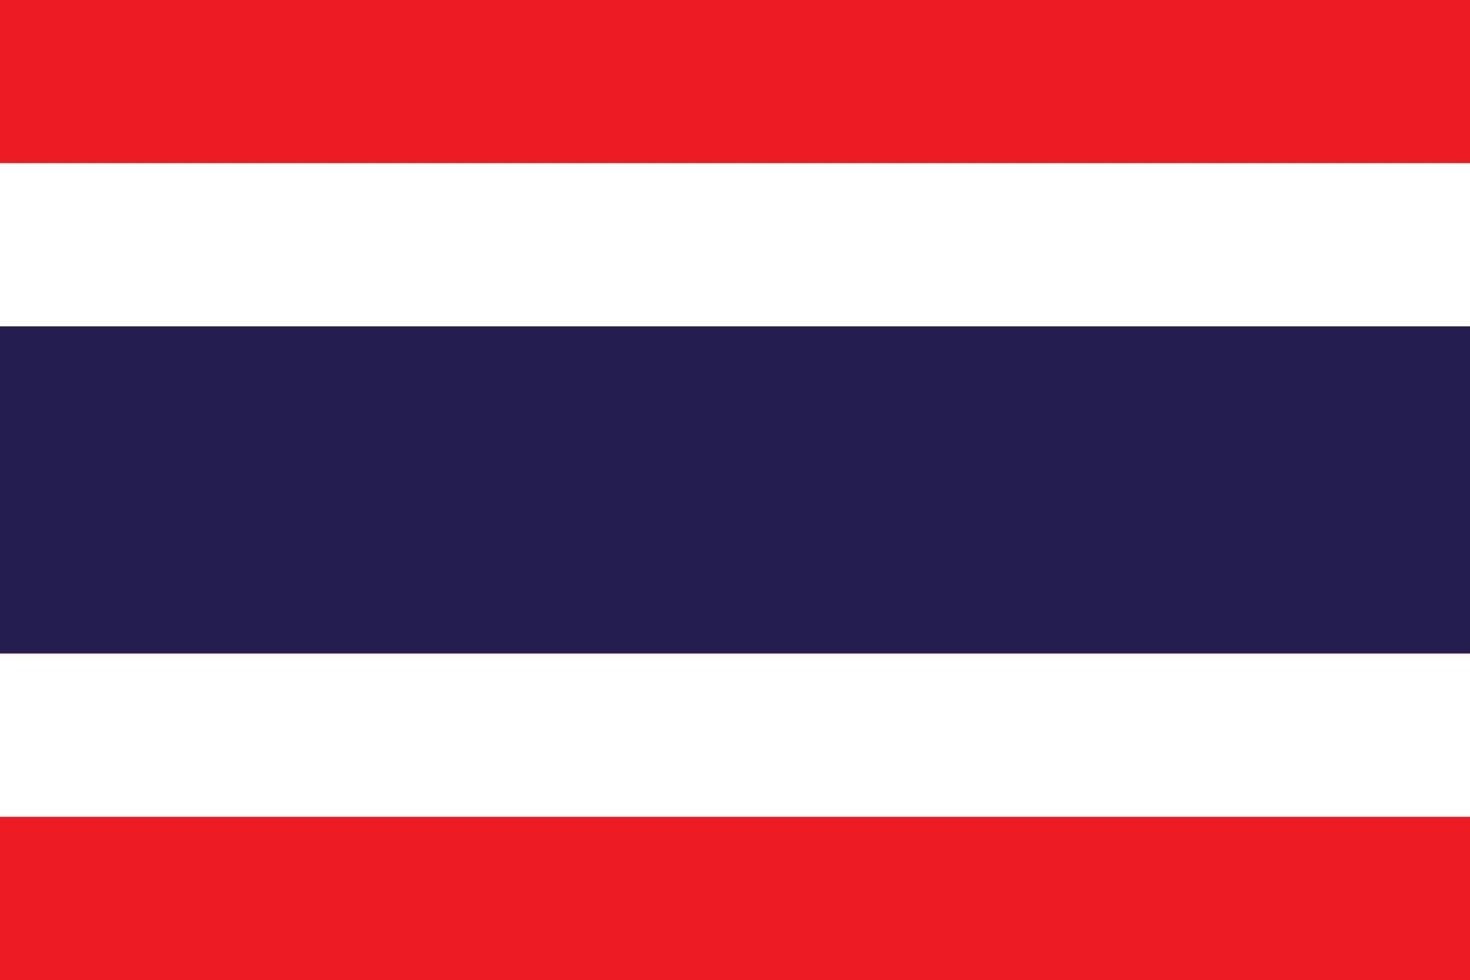 dimensione standard della bandiera della thailandia in asia. illustrazione vettoriale